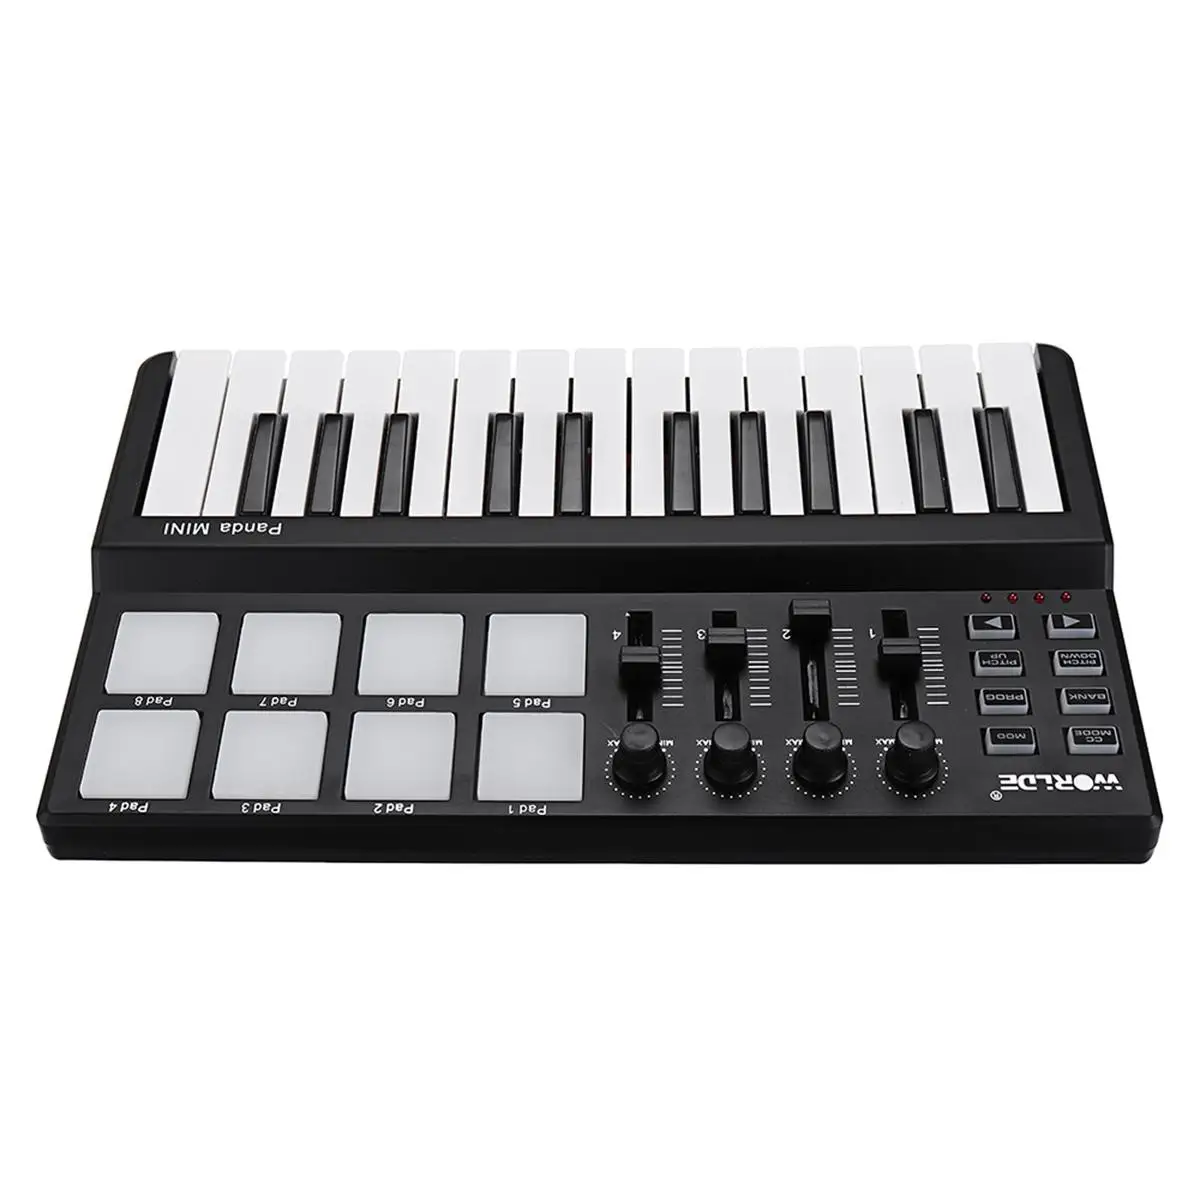 Worlde Panda mini Nešiojamas Mini 25-Key Keyboard USB ir Drum Pad MIDI Valdiklis Profesionalūs Muzikos Instrumentai, Juoda Spalva